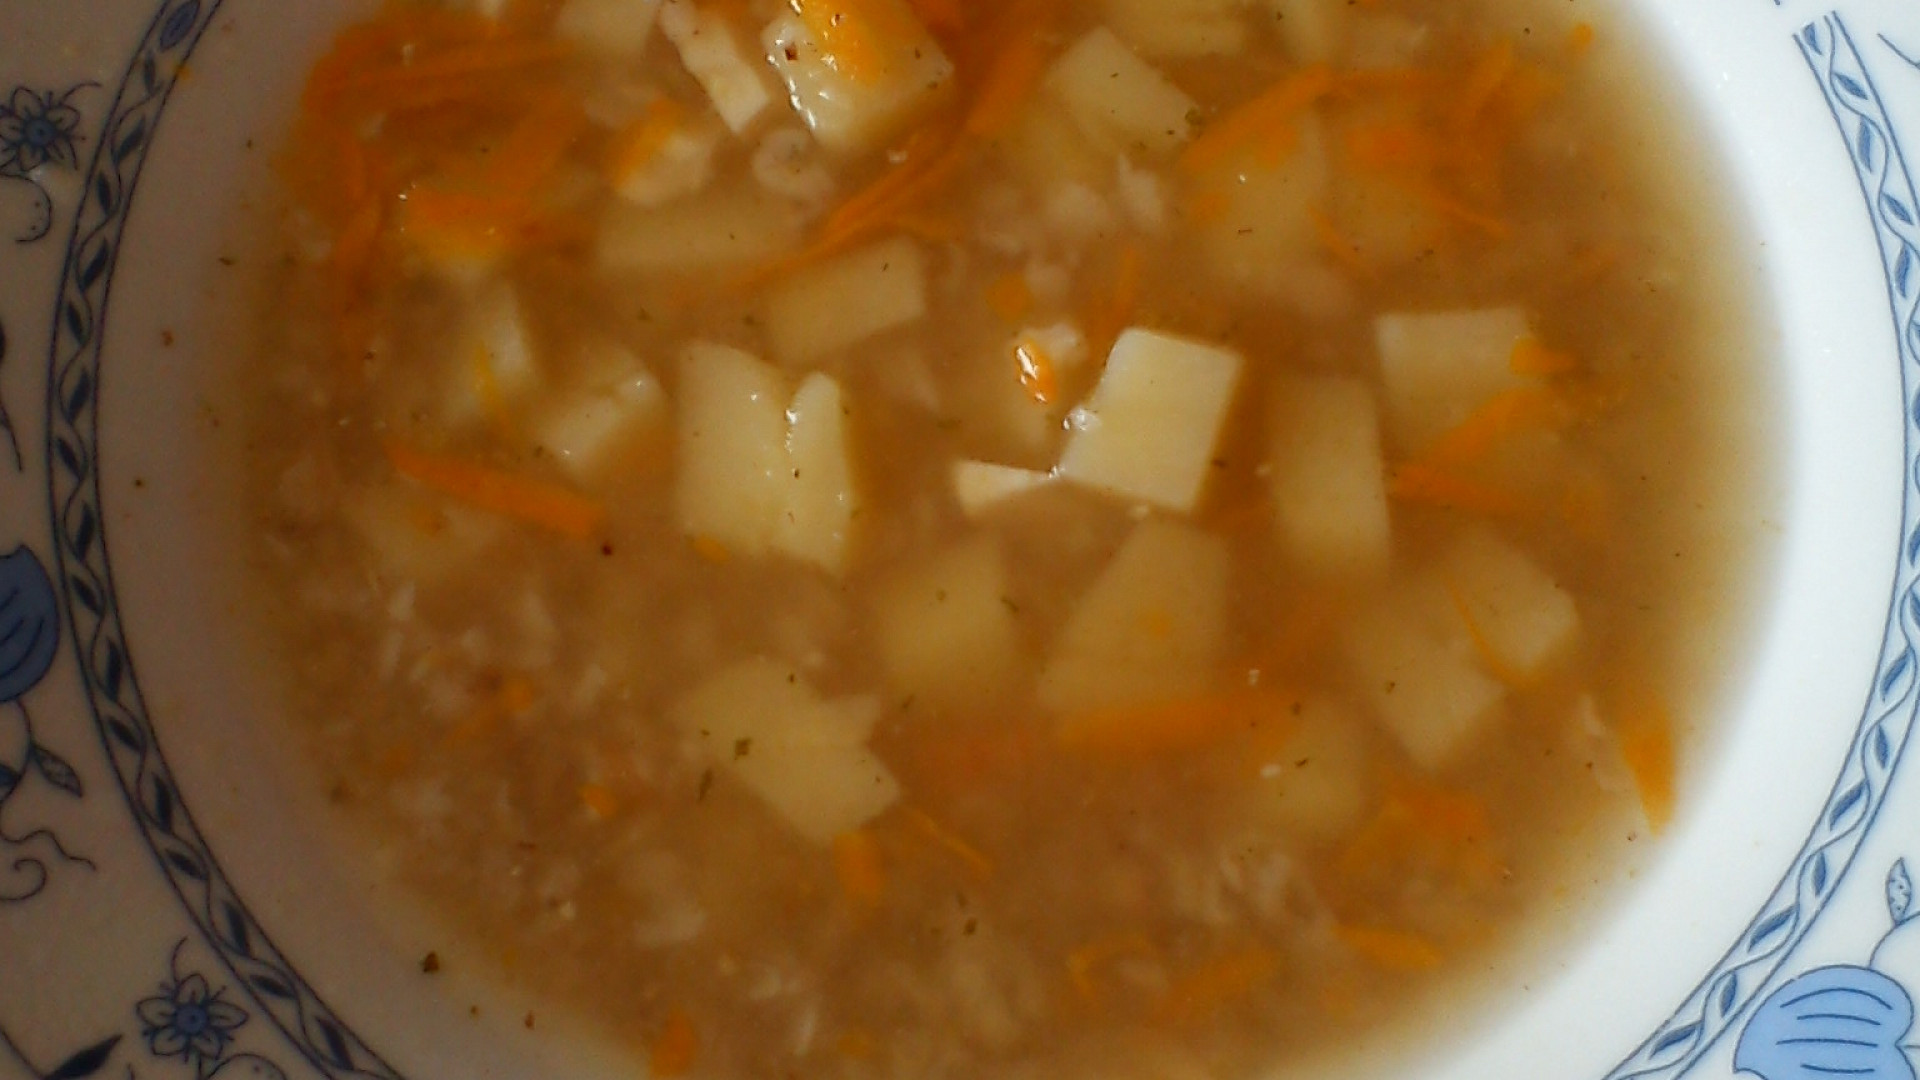 Pohanková polévka s česnekem